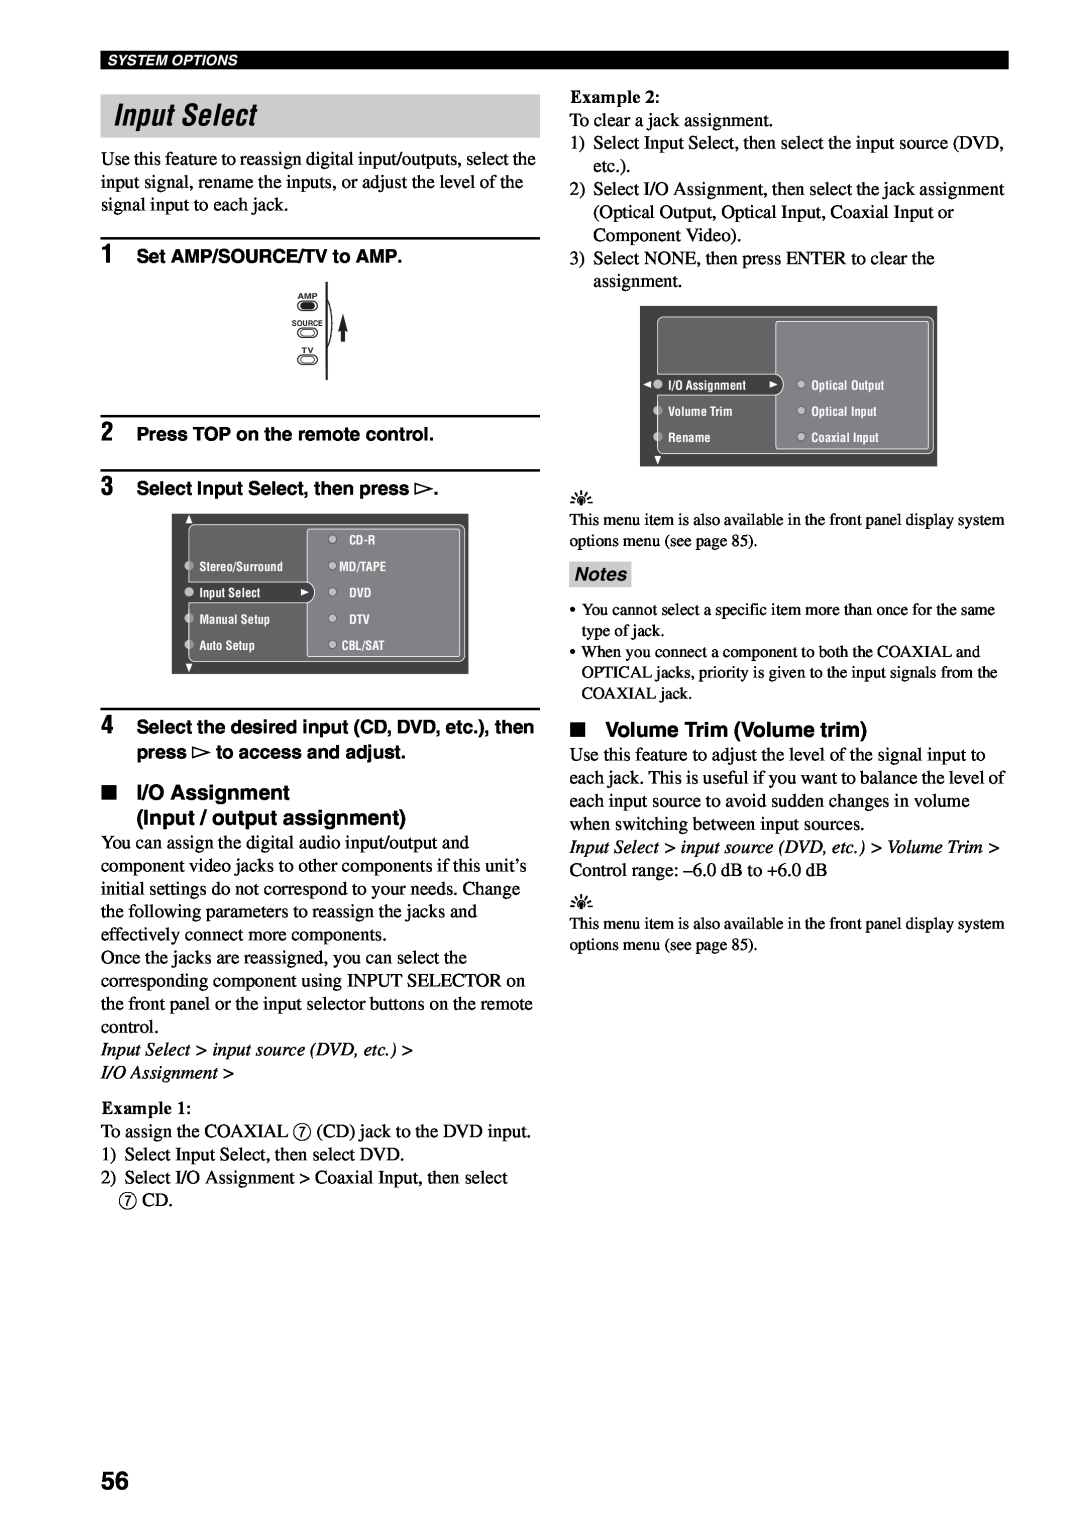 Yamaha RX-V2500 Input Select, I/O Assignment Input / output assignment, Volume Trim Volume trim, Example, Notes 